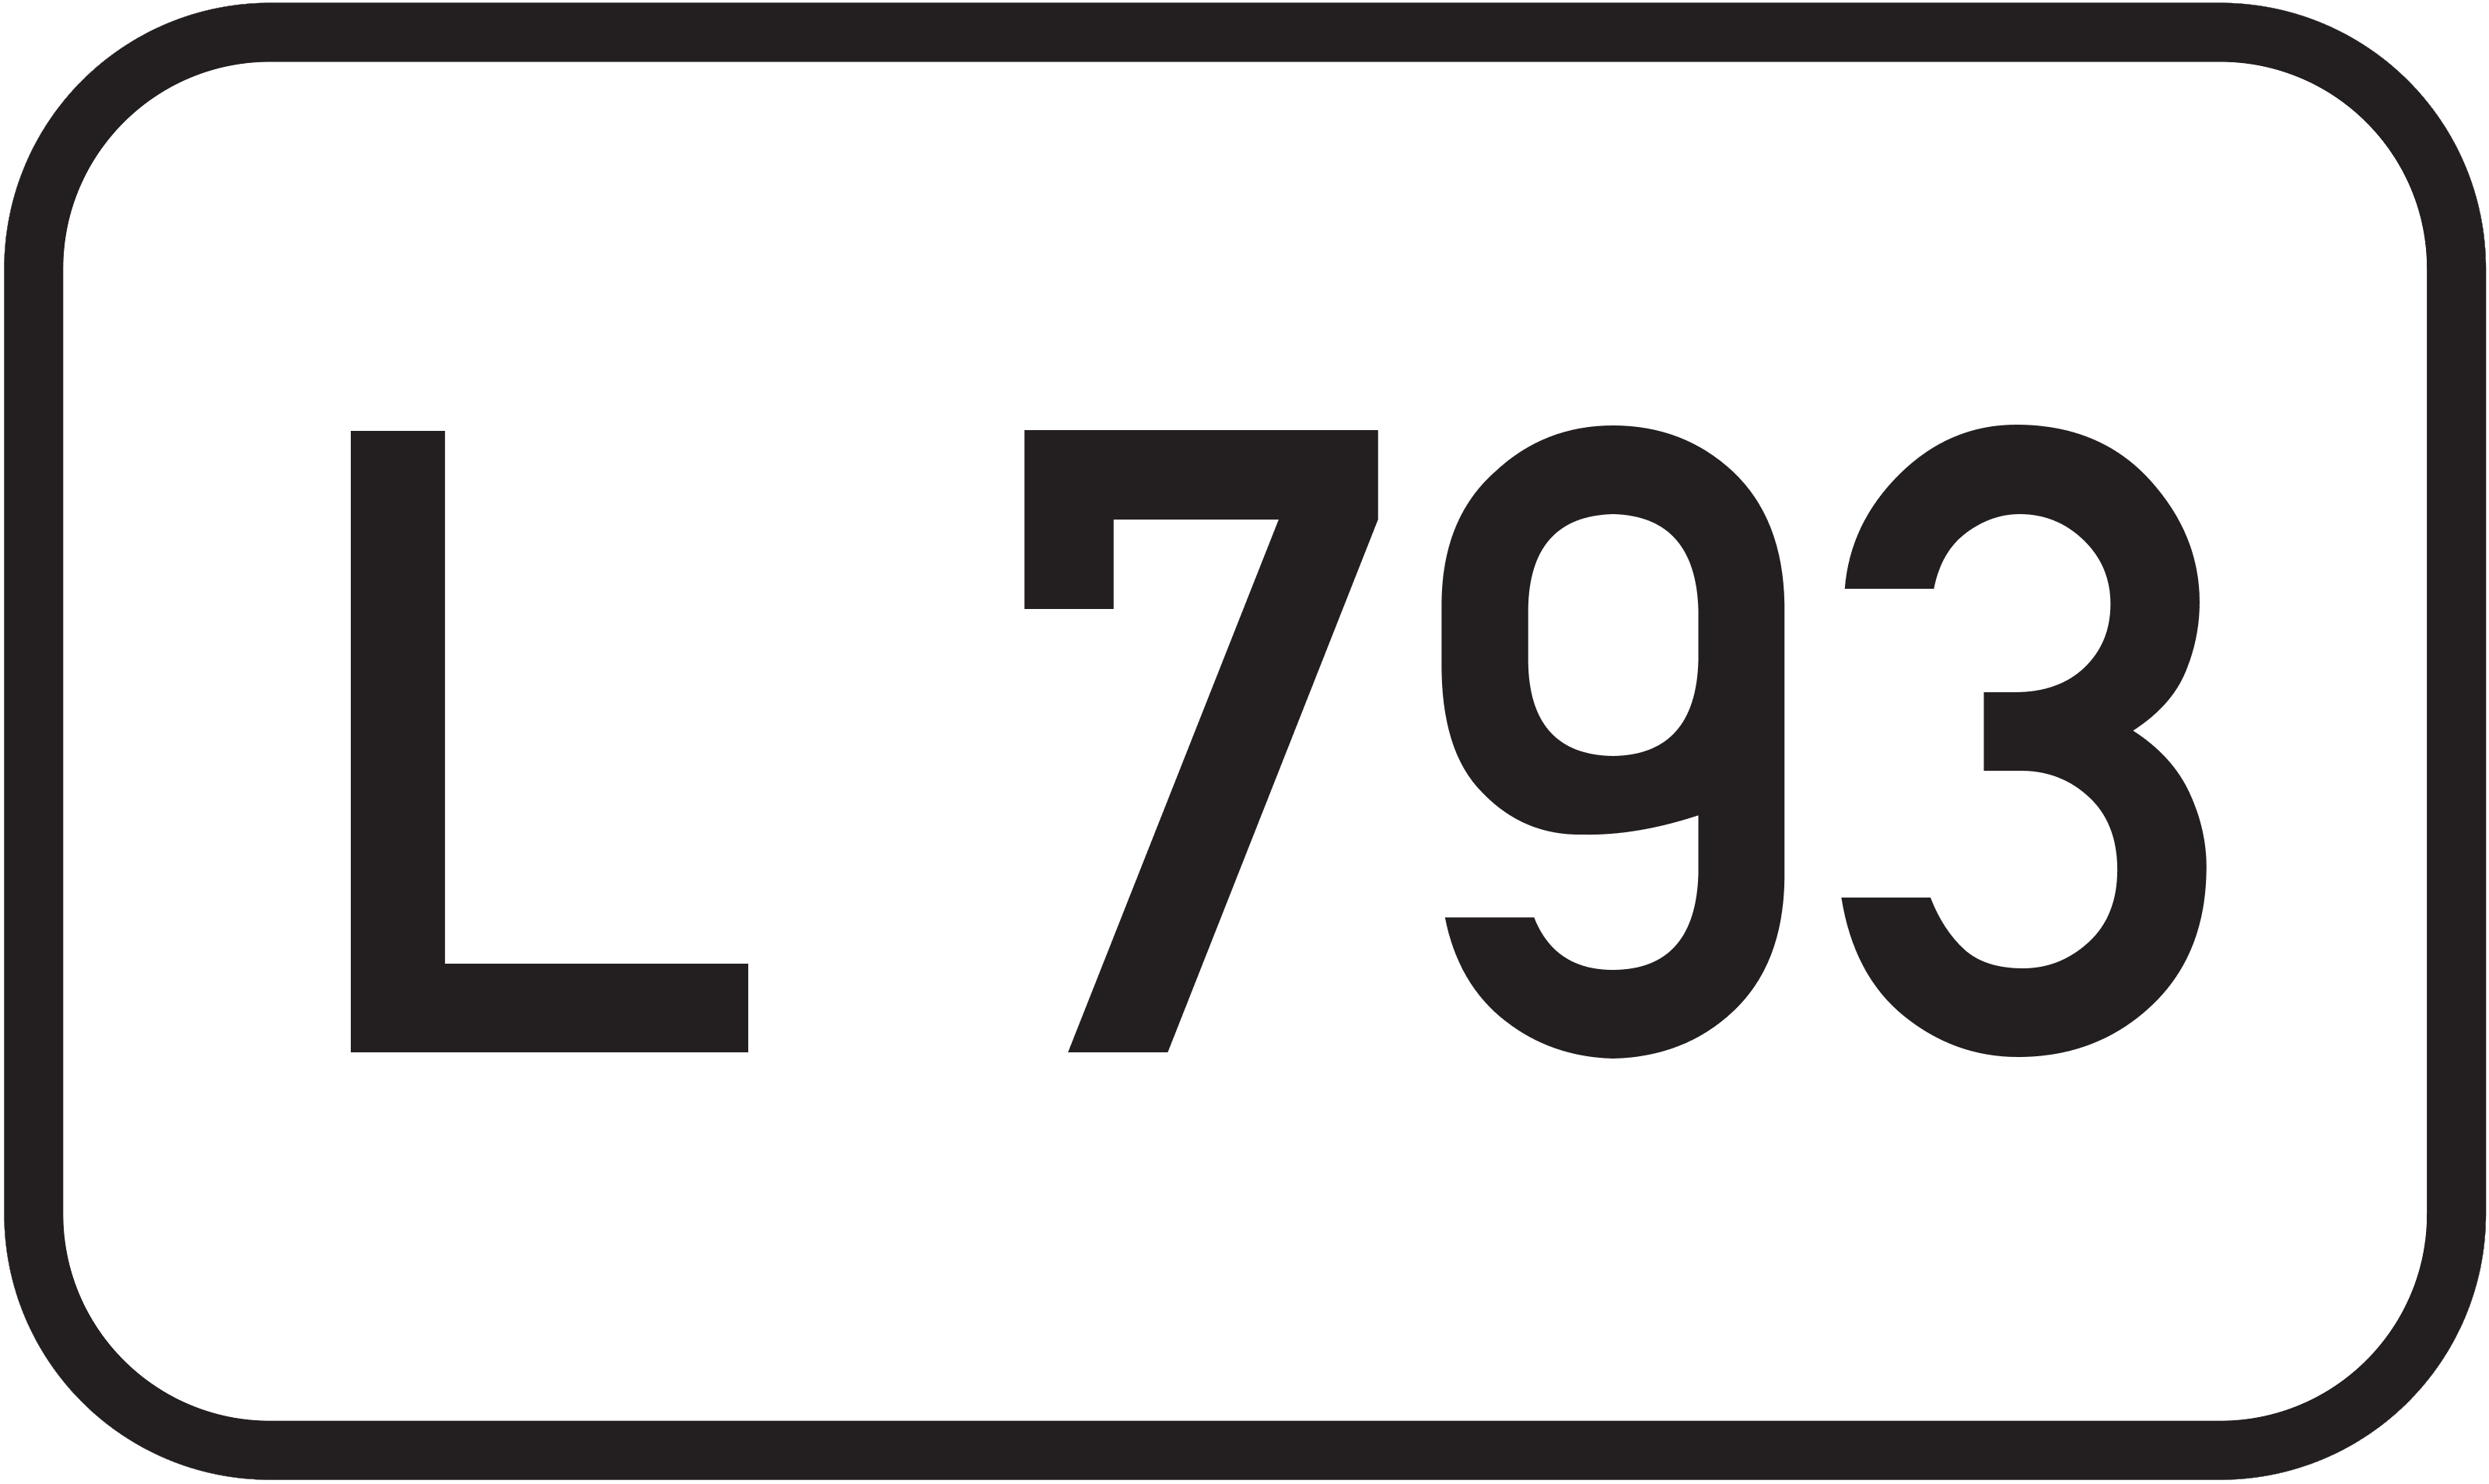 Landesstraße L 793